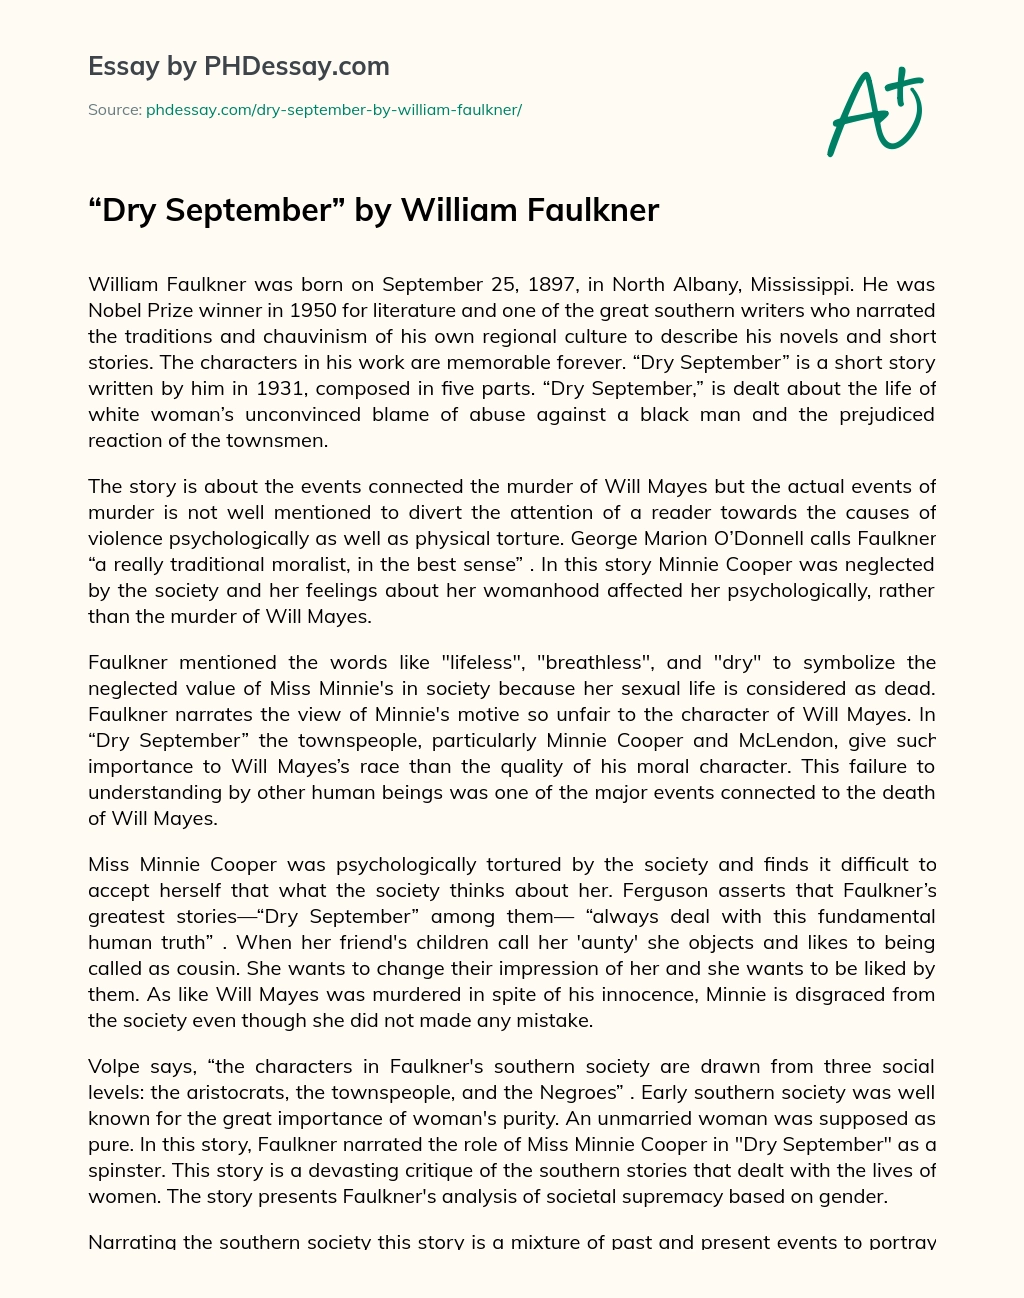 Dry September by William Faulkner essay